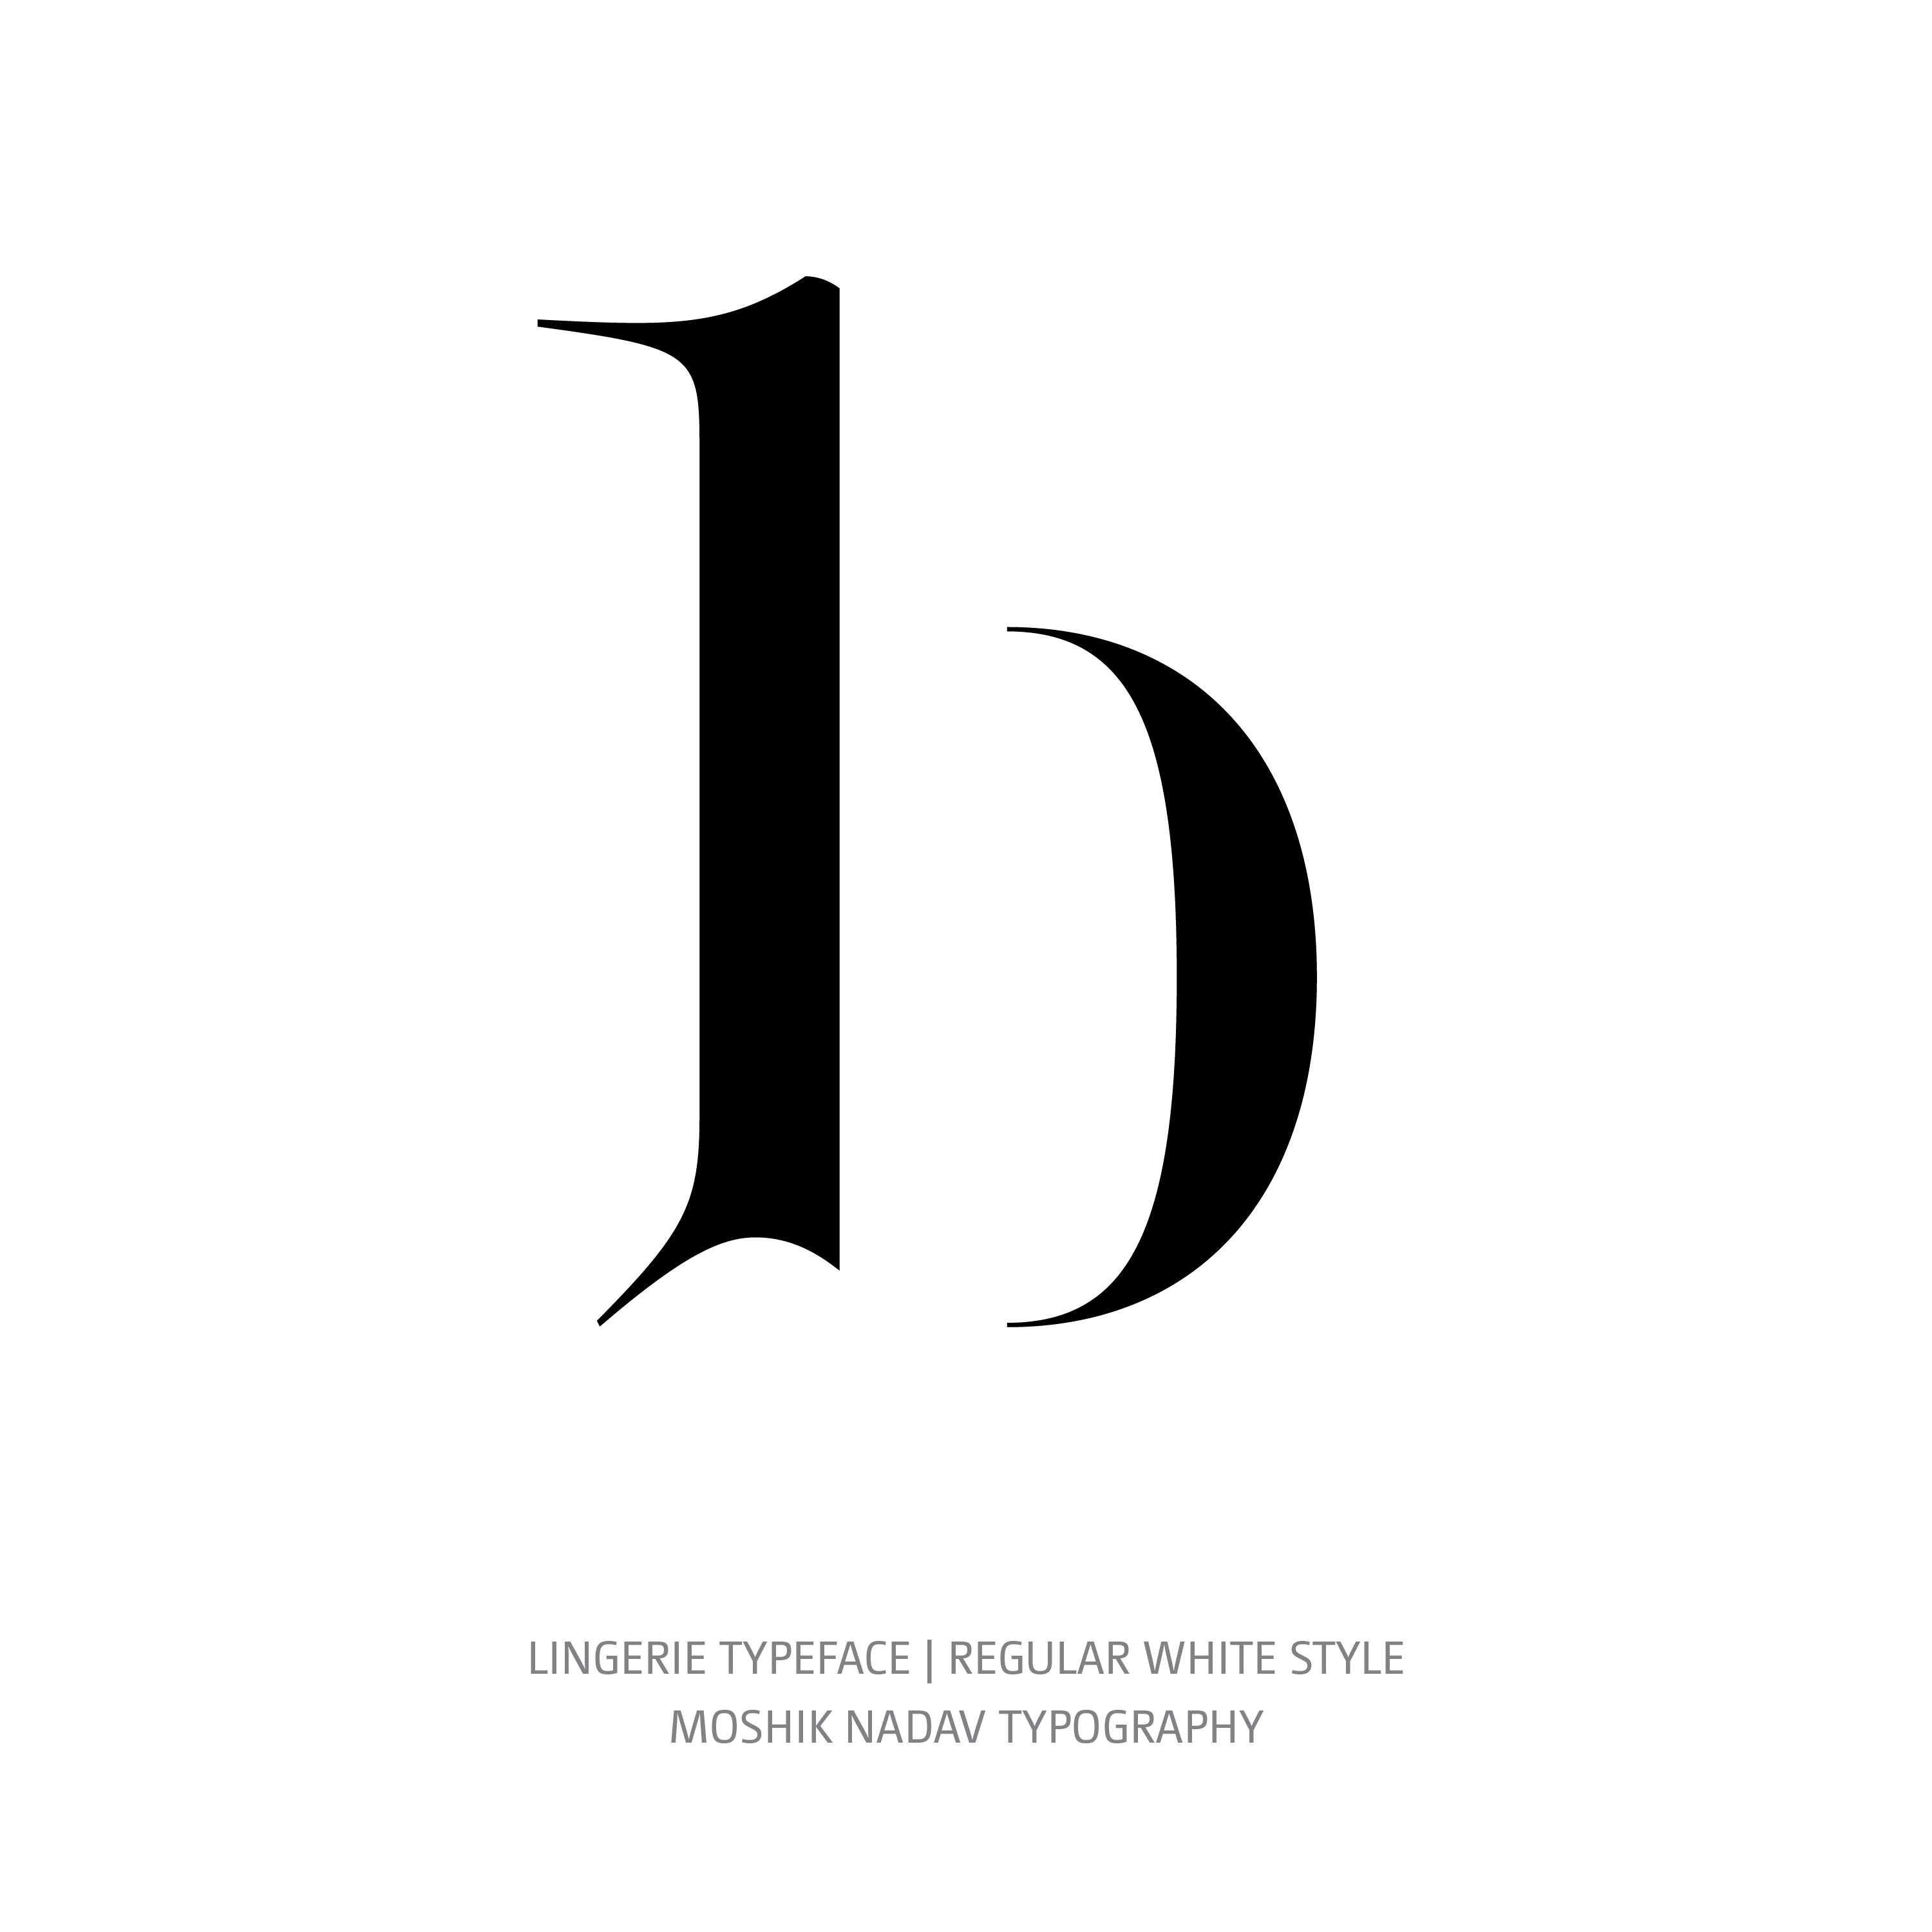 Lingerie Typeface Regular White b